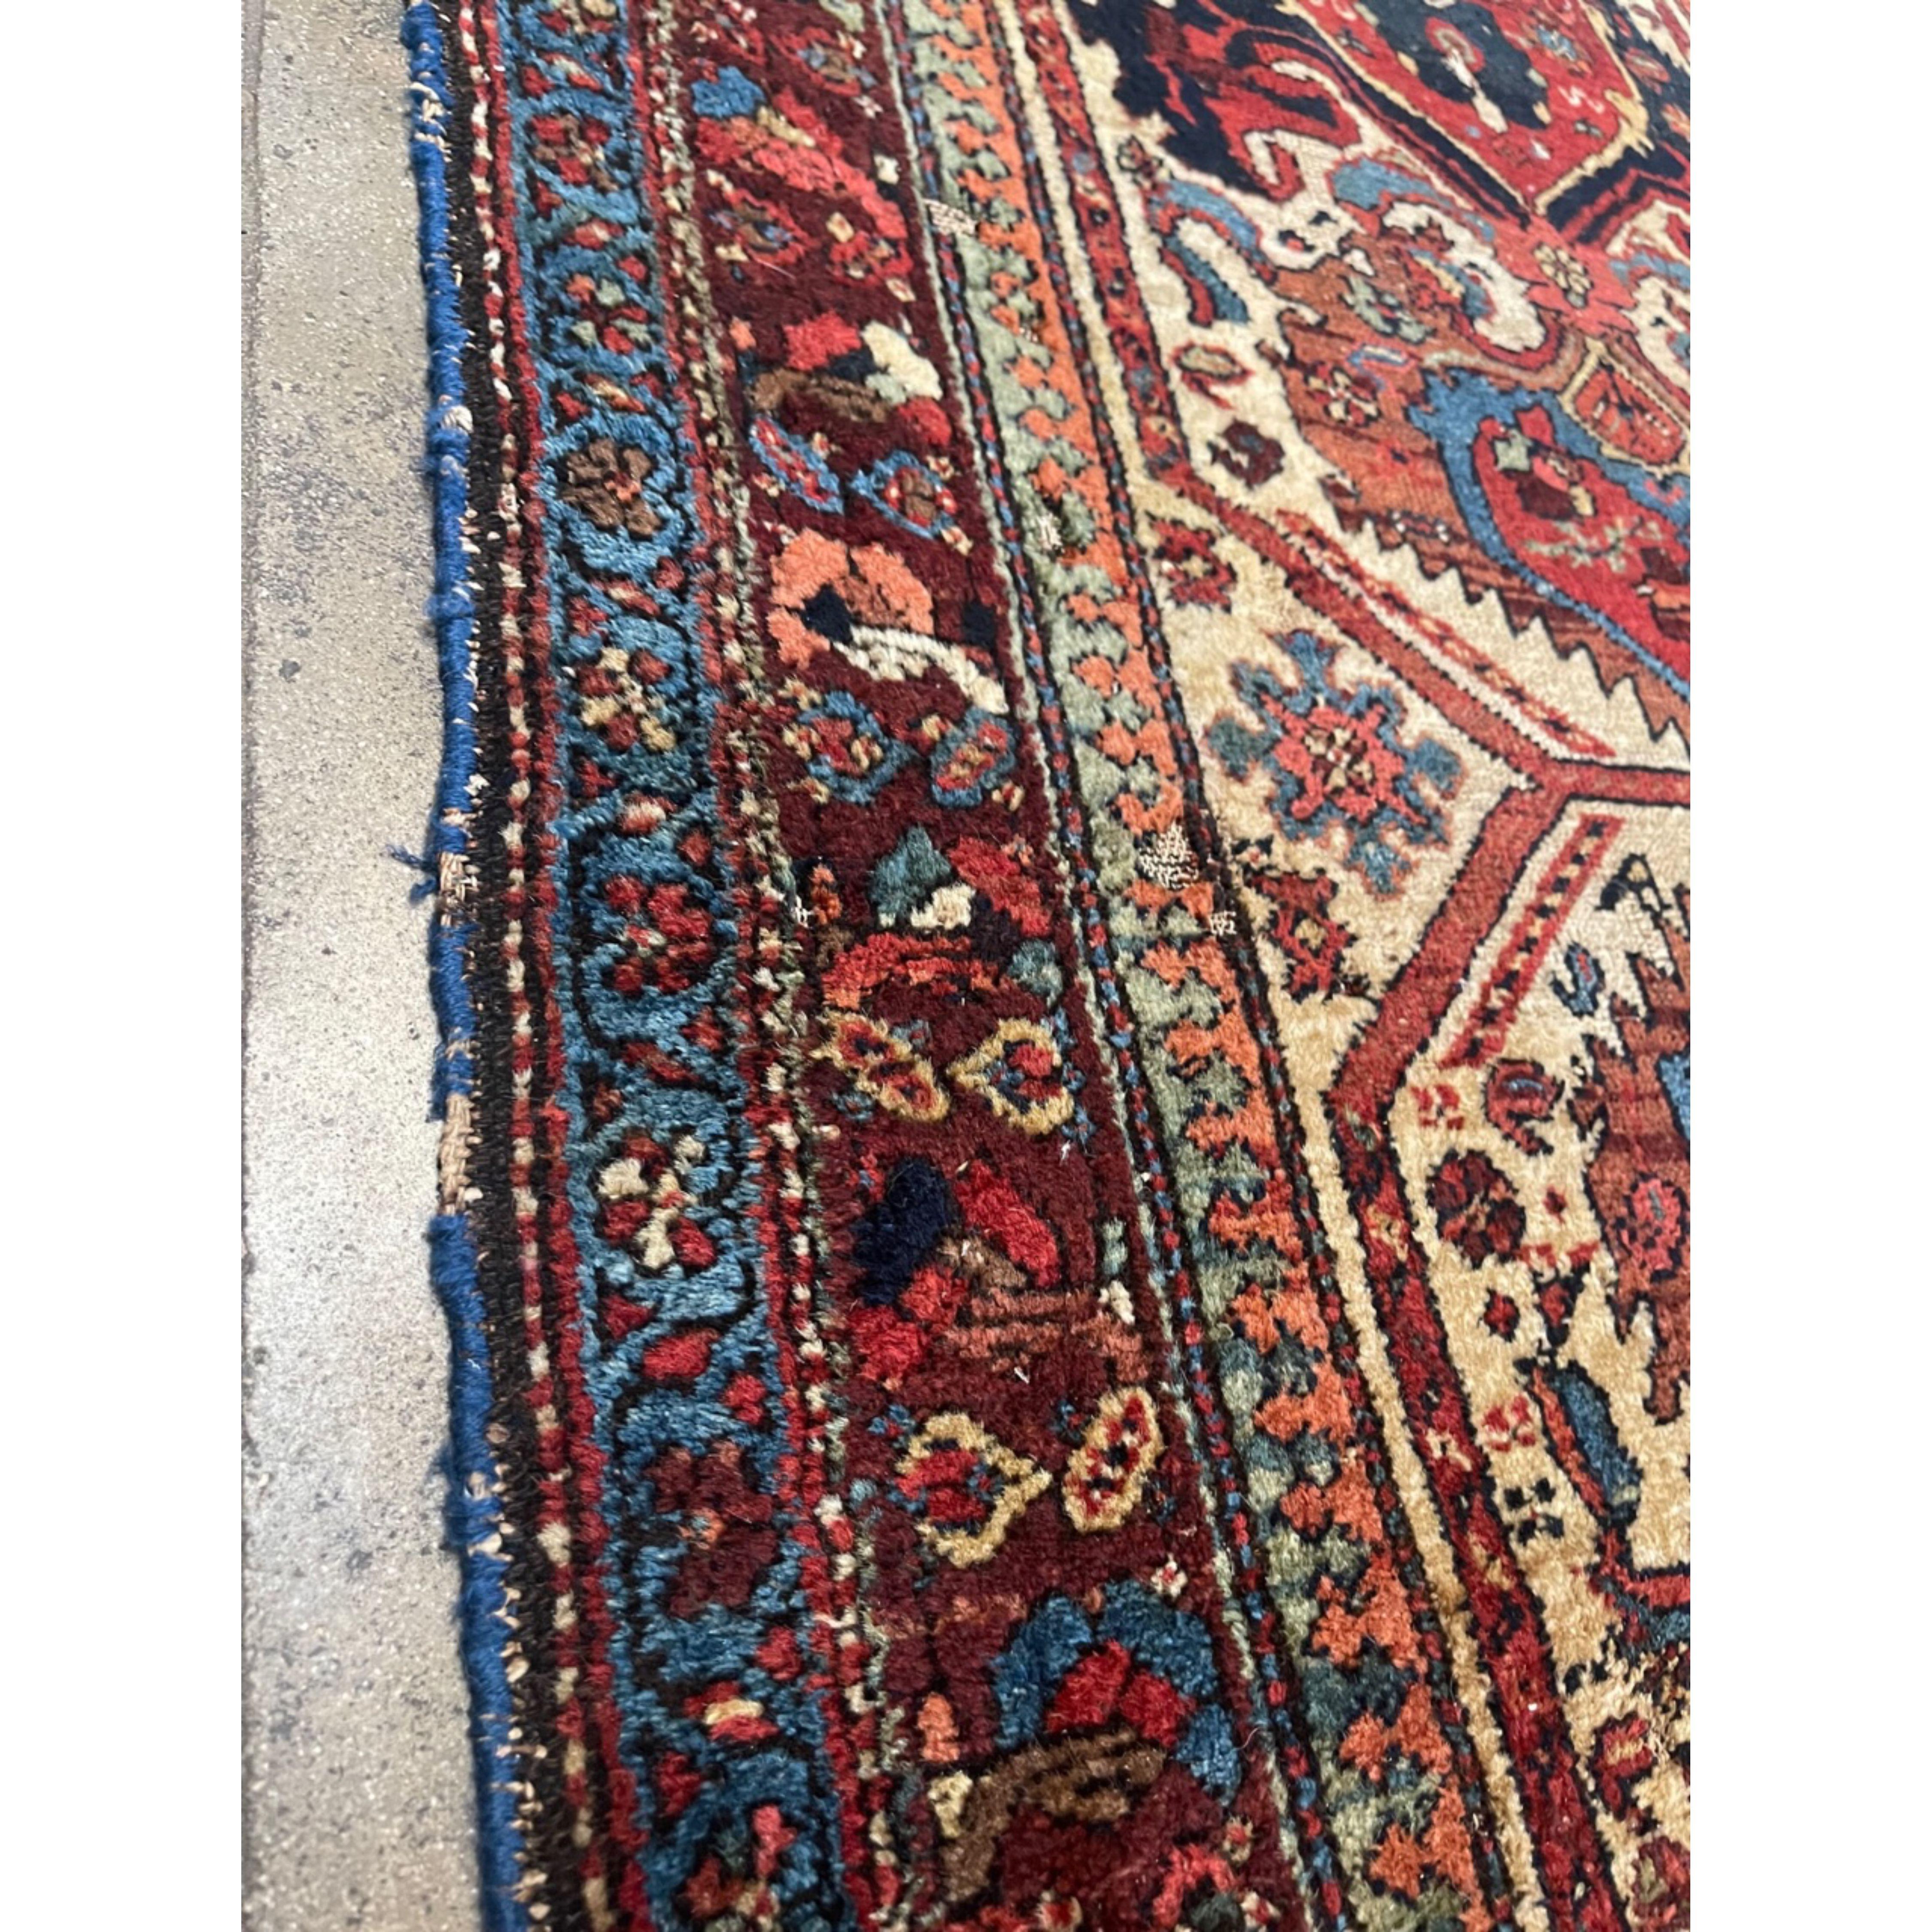 Tapis de Shirvan - Le khanat historique ou district administratif de Shirvan a produit de nombreux tapis anciens très décoratifs, d'une formalité et d'une complexité stylistique que l'on retrouve dans peu de tapis du Caucase. La profondeur des